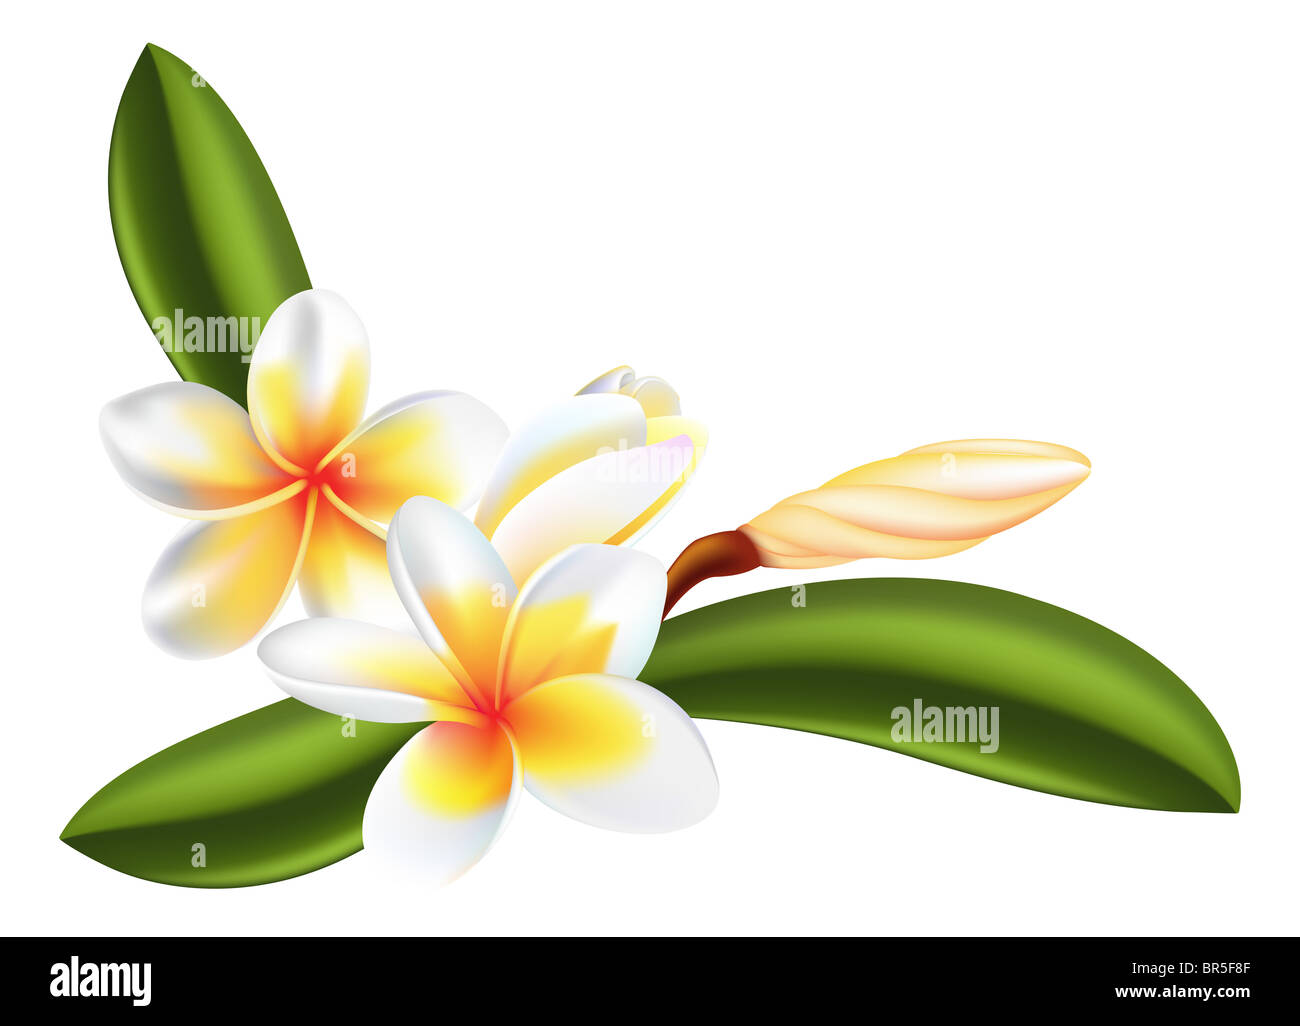 Illustrazione della bella frangipani o fiori di plumeria Foto Stock